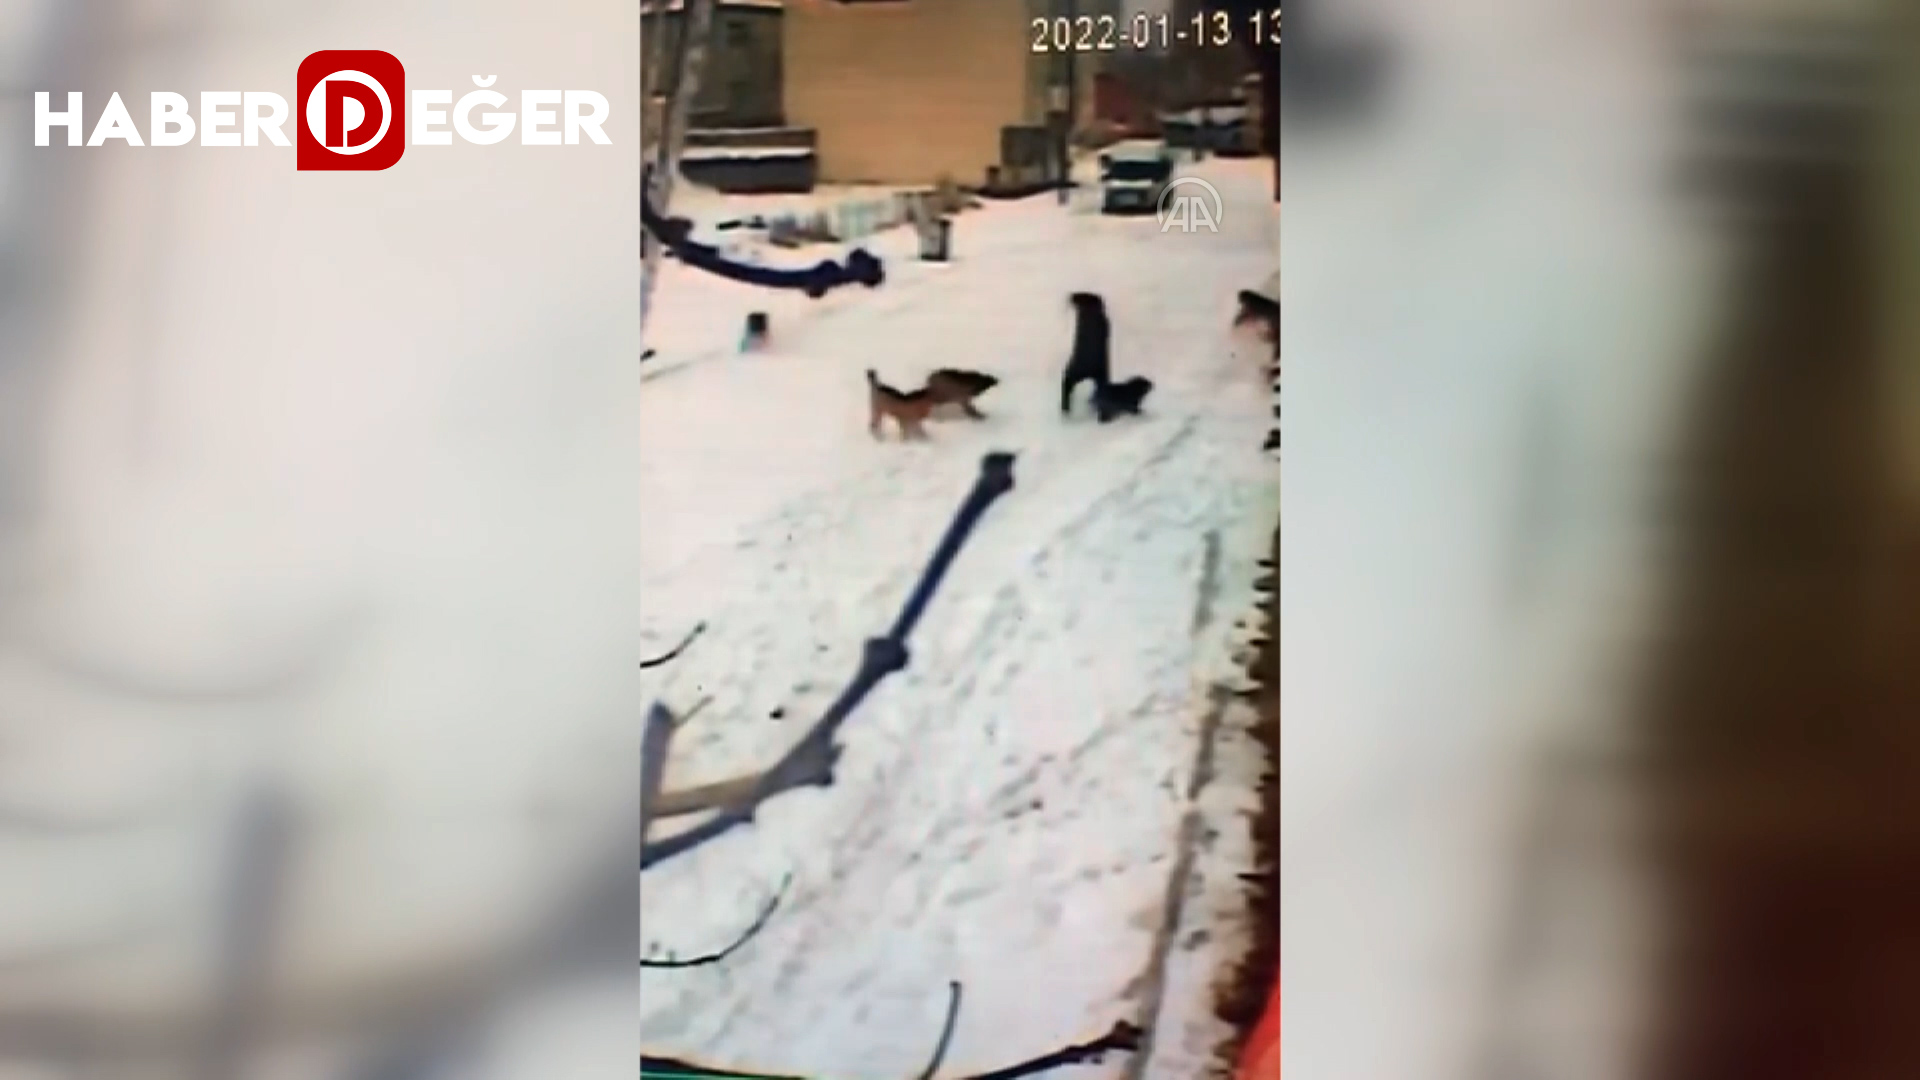 Kars’ta çocuğun köpeklerin saldırısından cesaretiyle kurtulduğu anlar kamerada